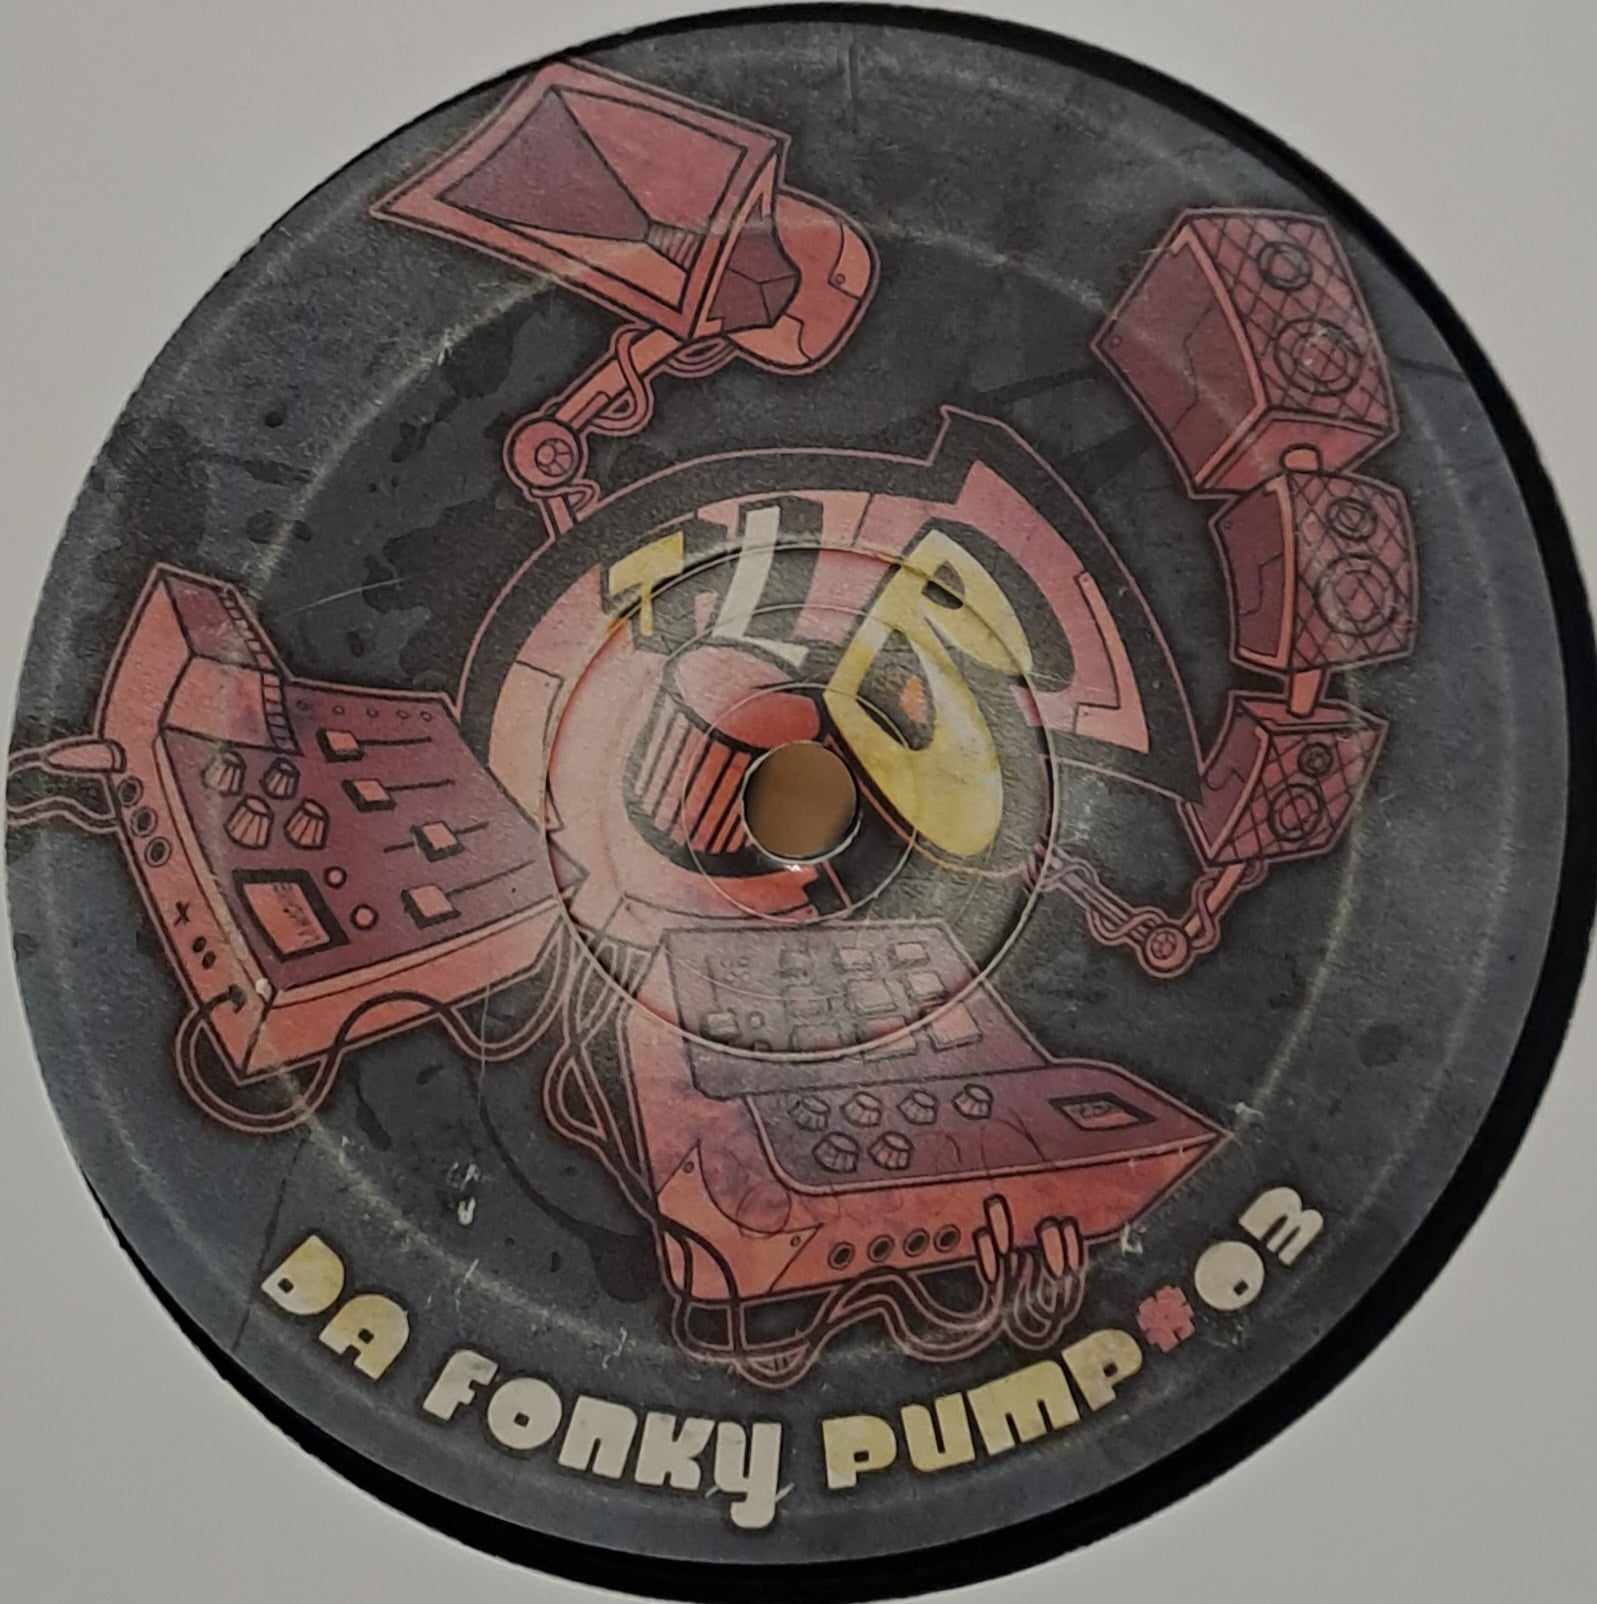 Da Fonky Pump 03 - vinyle freetekno